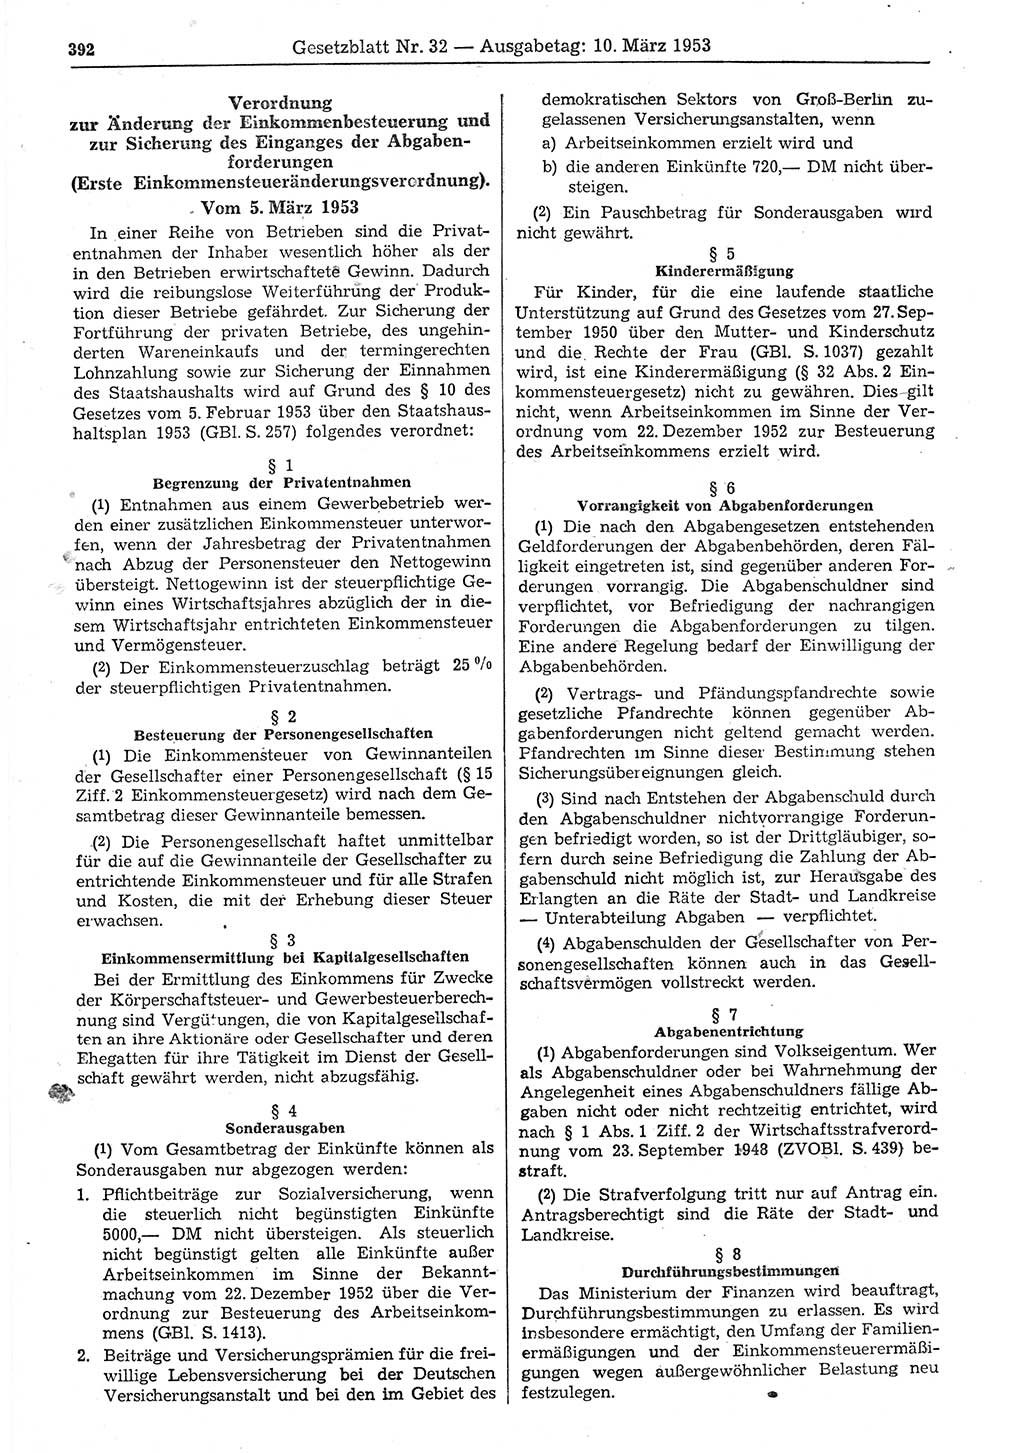 Gesetzblatt (GBl.) der Deutschen Demokratischen Republik (DDR) 1953, Seite 392 (GBl. DDR 1953, S. 392)